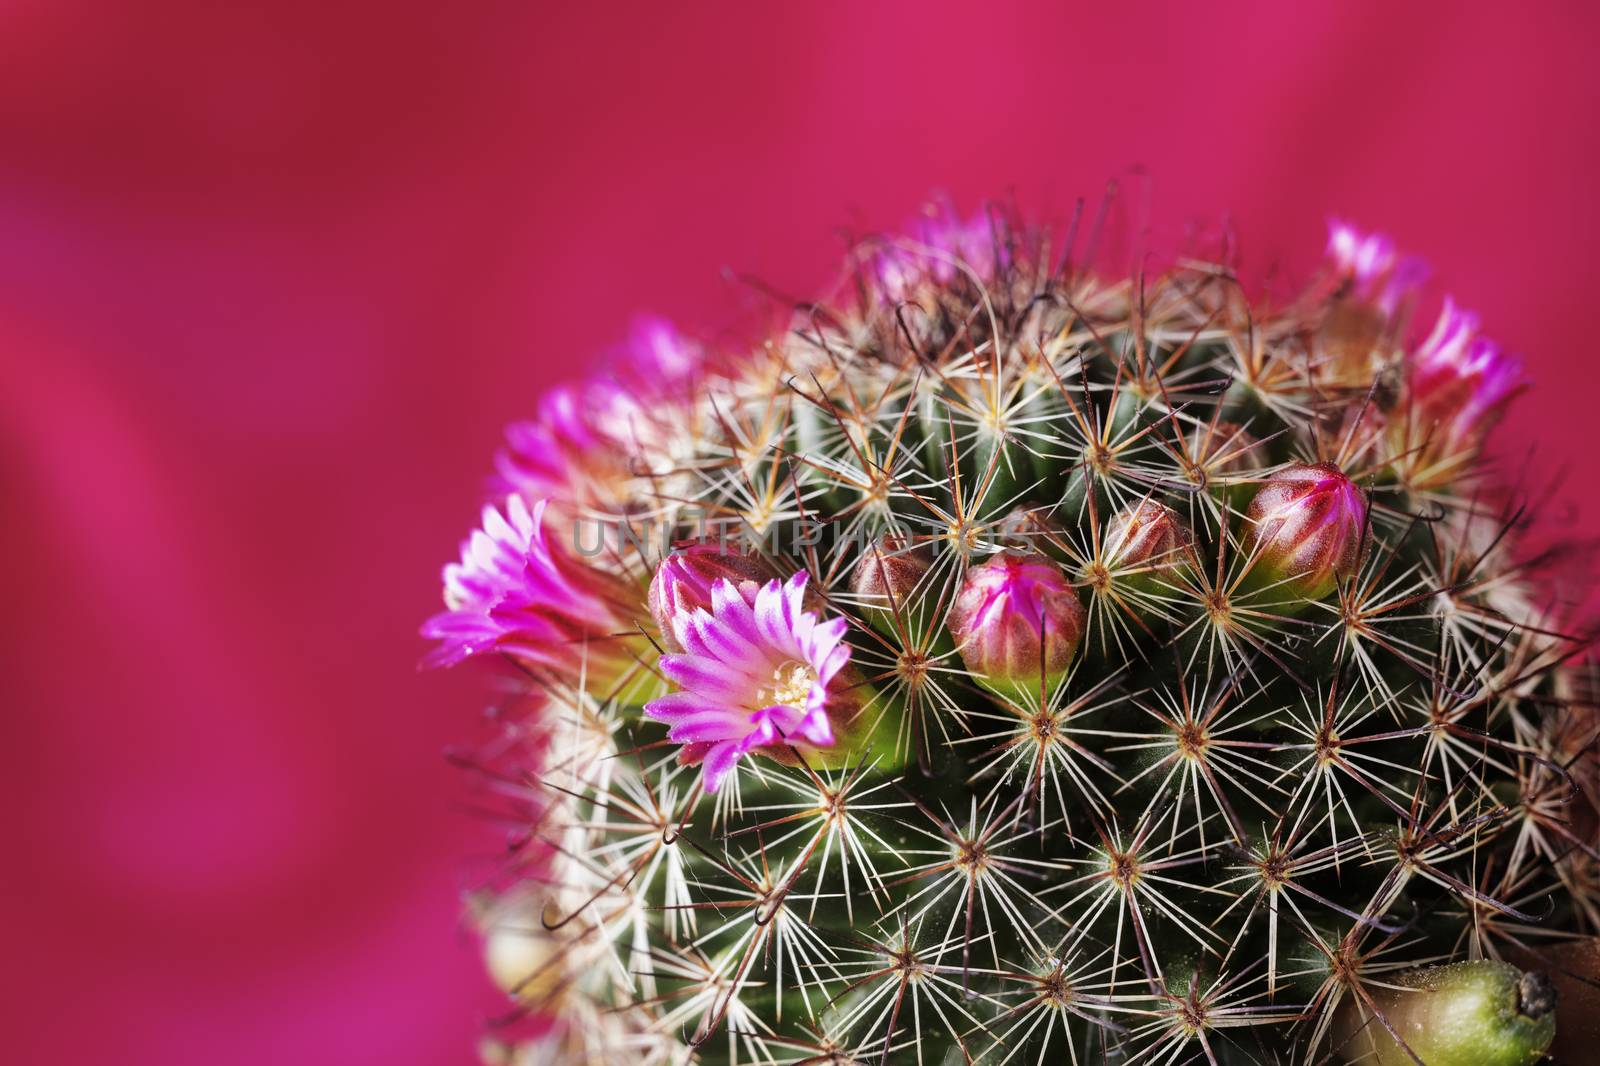 Pink cactus flowers  by victimewalker